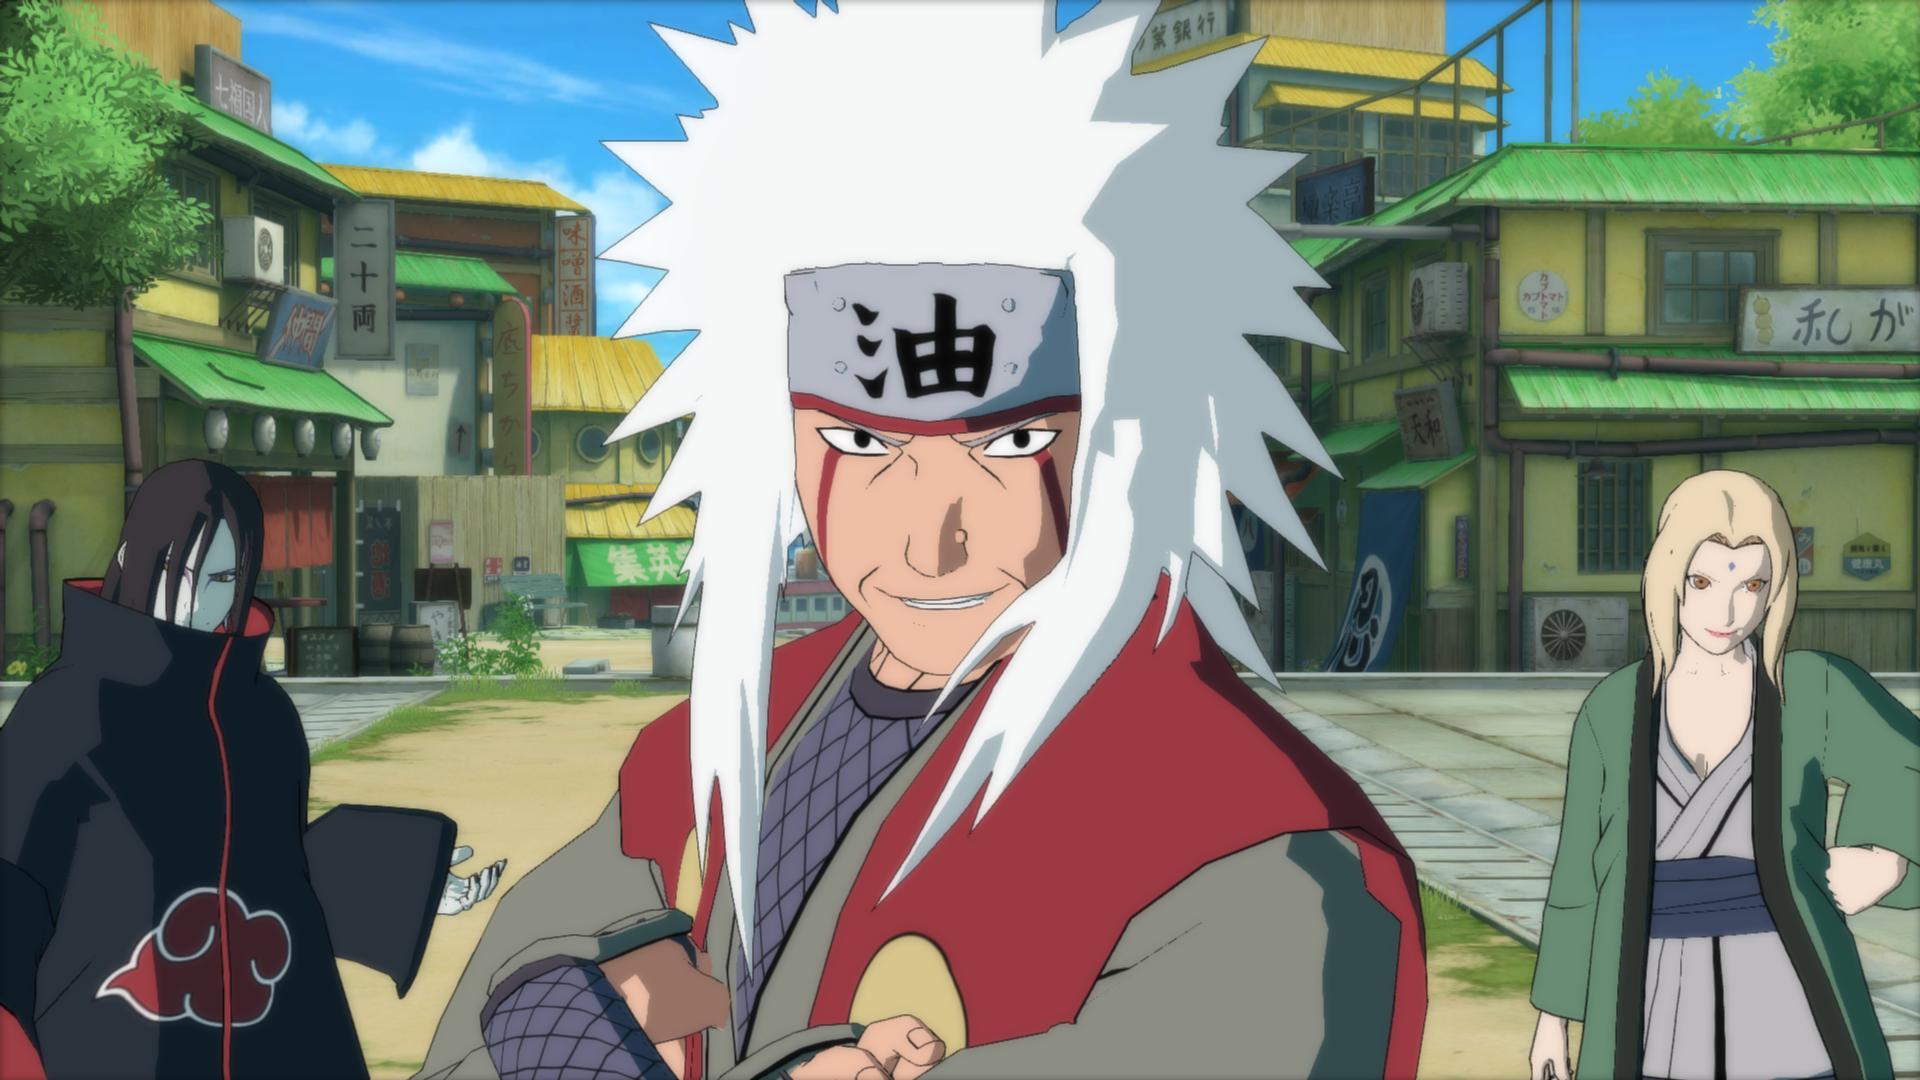 Hình nền  hình minh họa Anime hoạt hình Naruto Shippuuden Truyện  tranh Tsunade Jiraiya Orochimaru Mangaka 2507x3516  JT42  109895  Hình  nền đẹp hd  WallHere